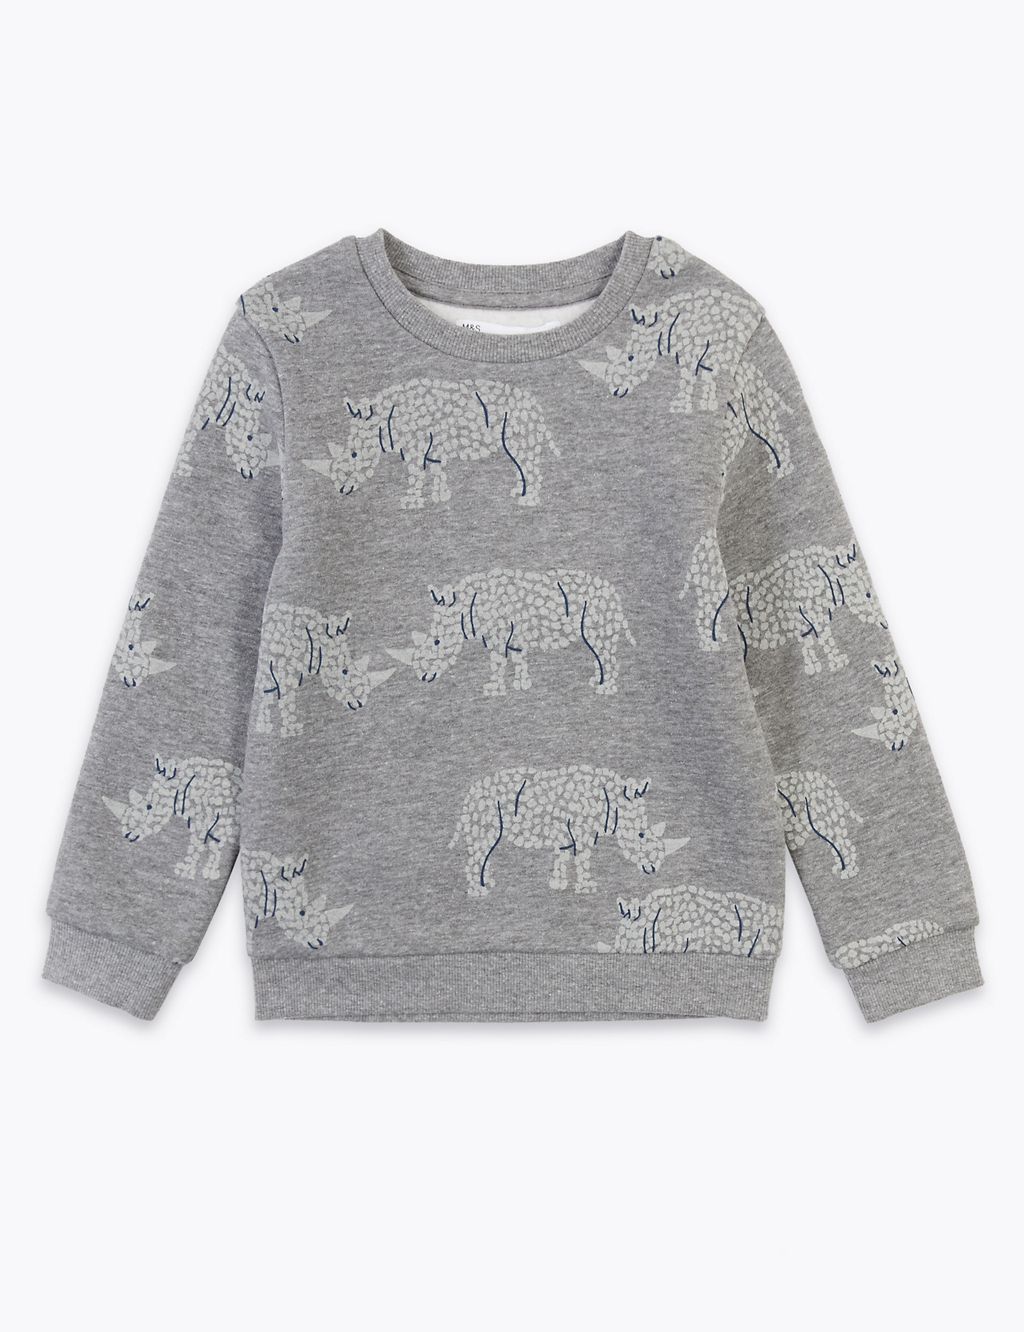 Rhino Print Sweatshirt (2-7 Yrs) 1 of 4